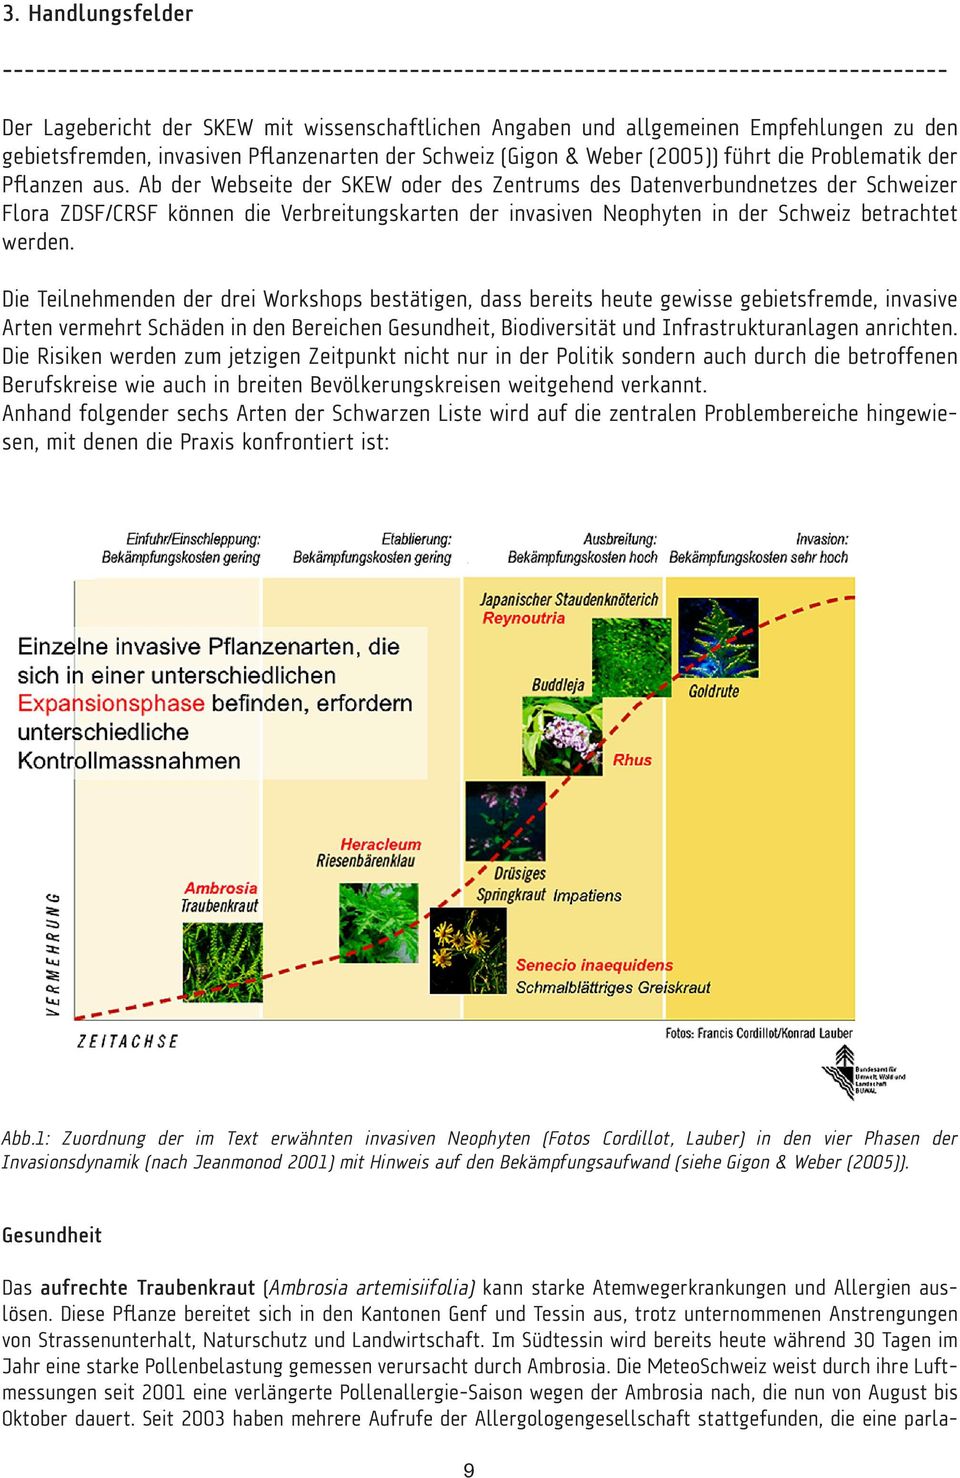 Ab der Webseite der SKEW oder des Zentrums des Datenverbundnetzes der Schweizer Flora ZDSF/CRSF können die Verbreitungskarten der invasiven Neophyten in der Schweiz betrachtet werden.